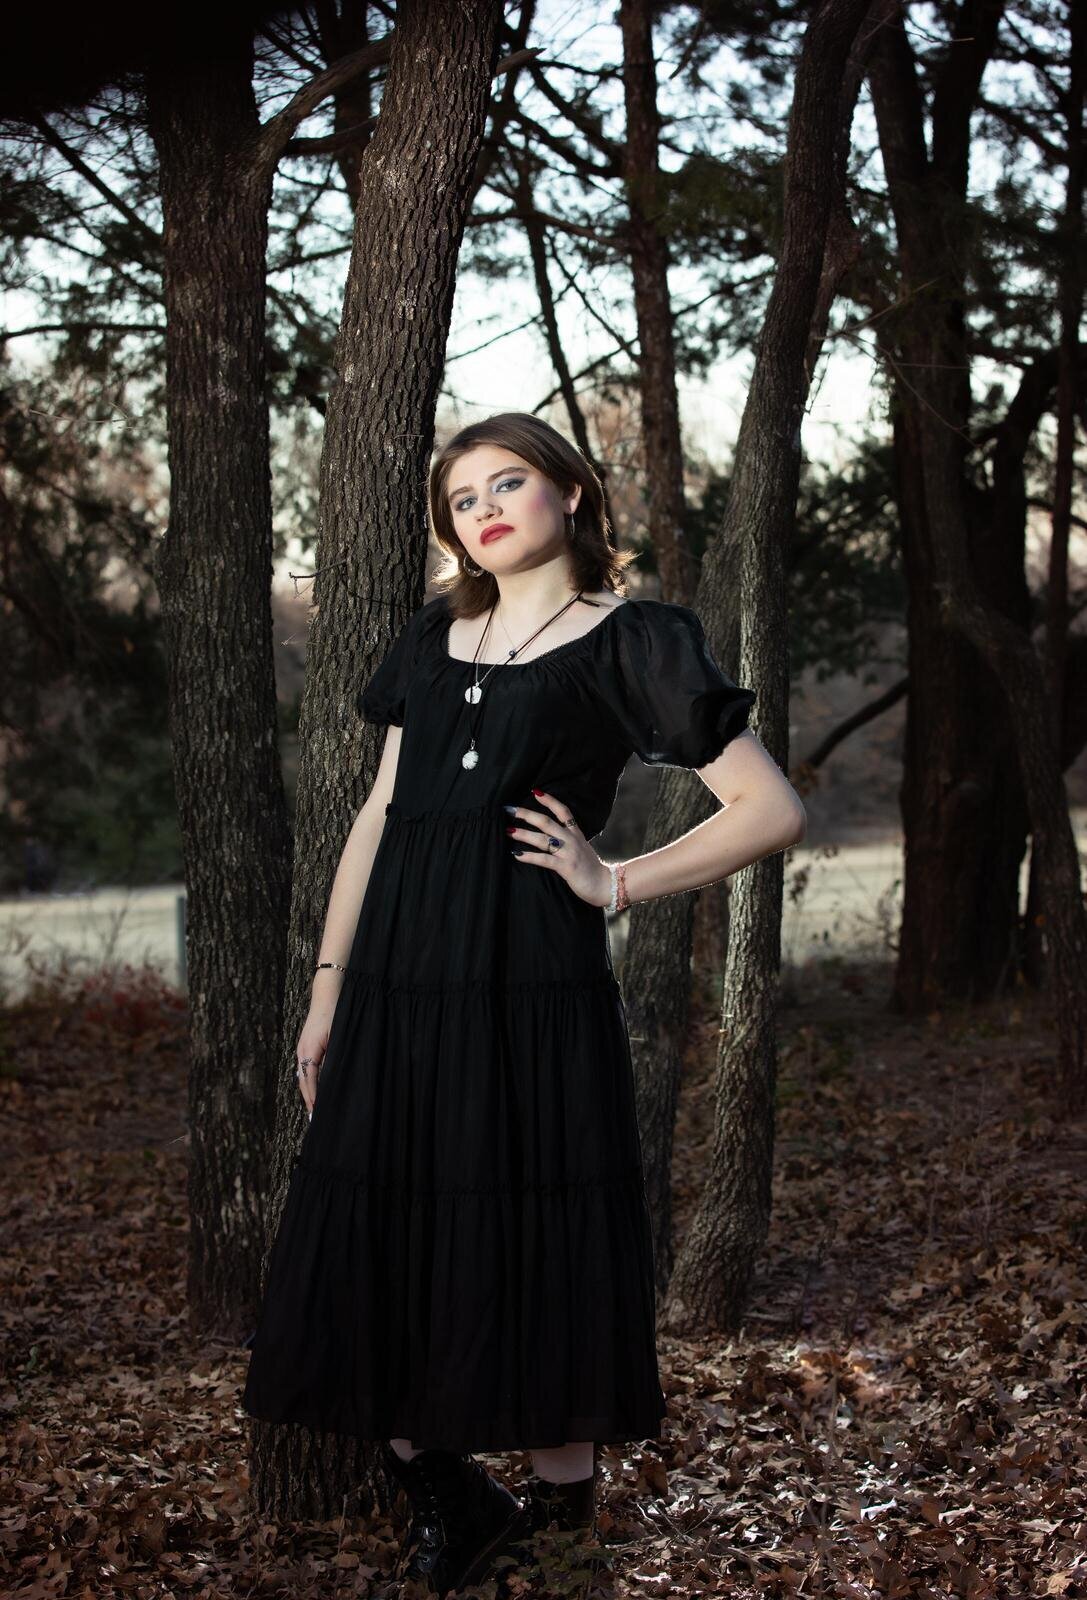 senior-girl-posing-in-black-dress-in-forest